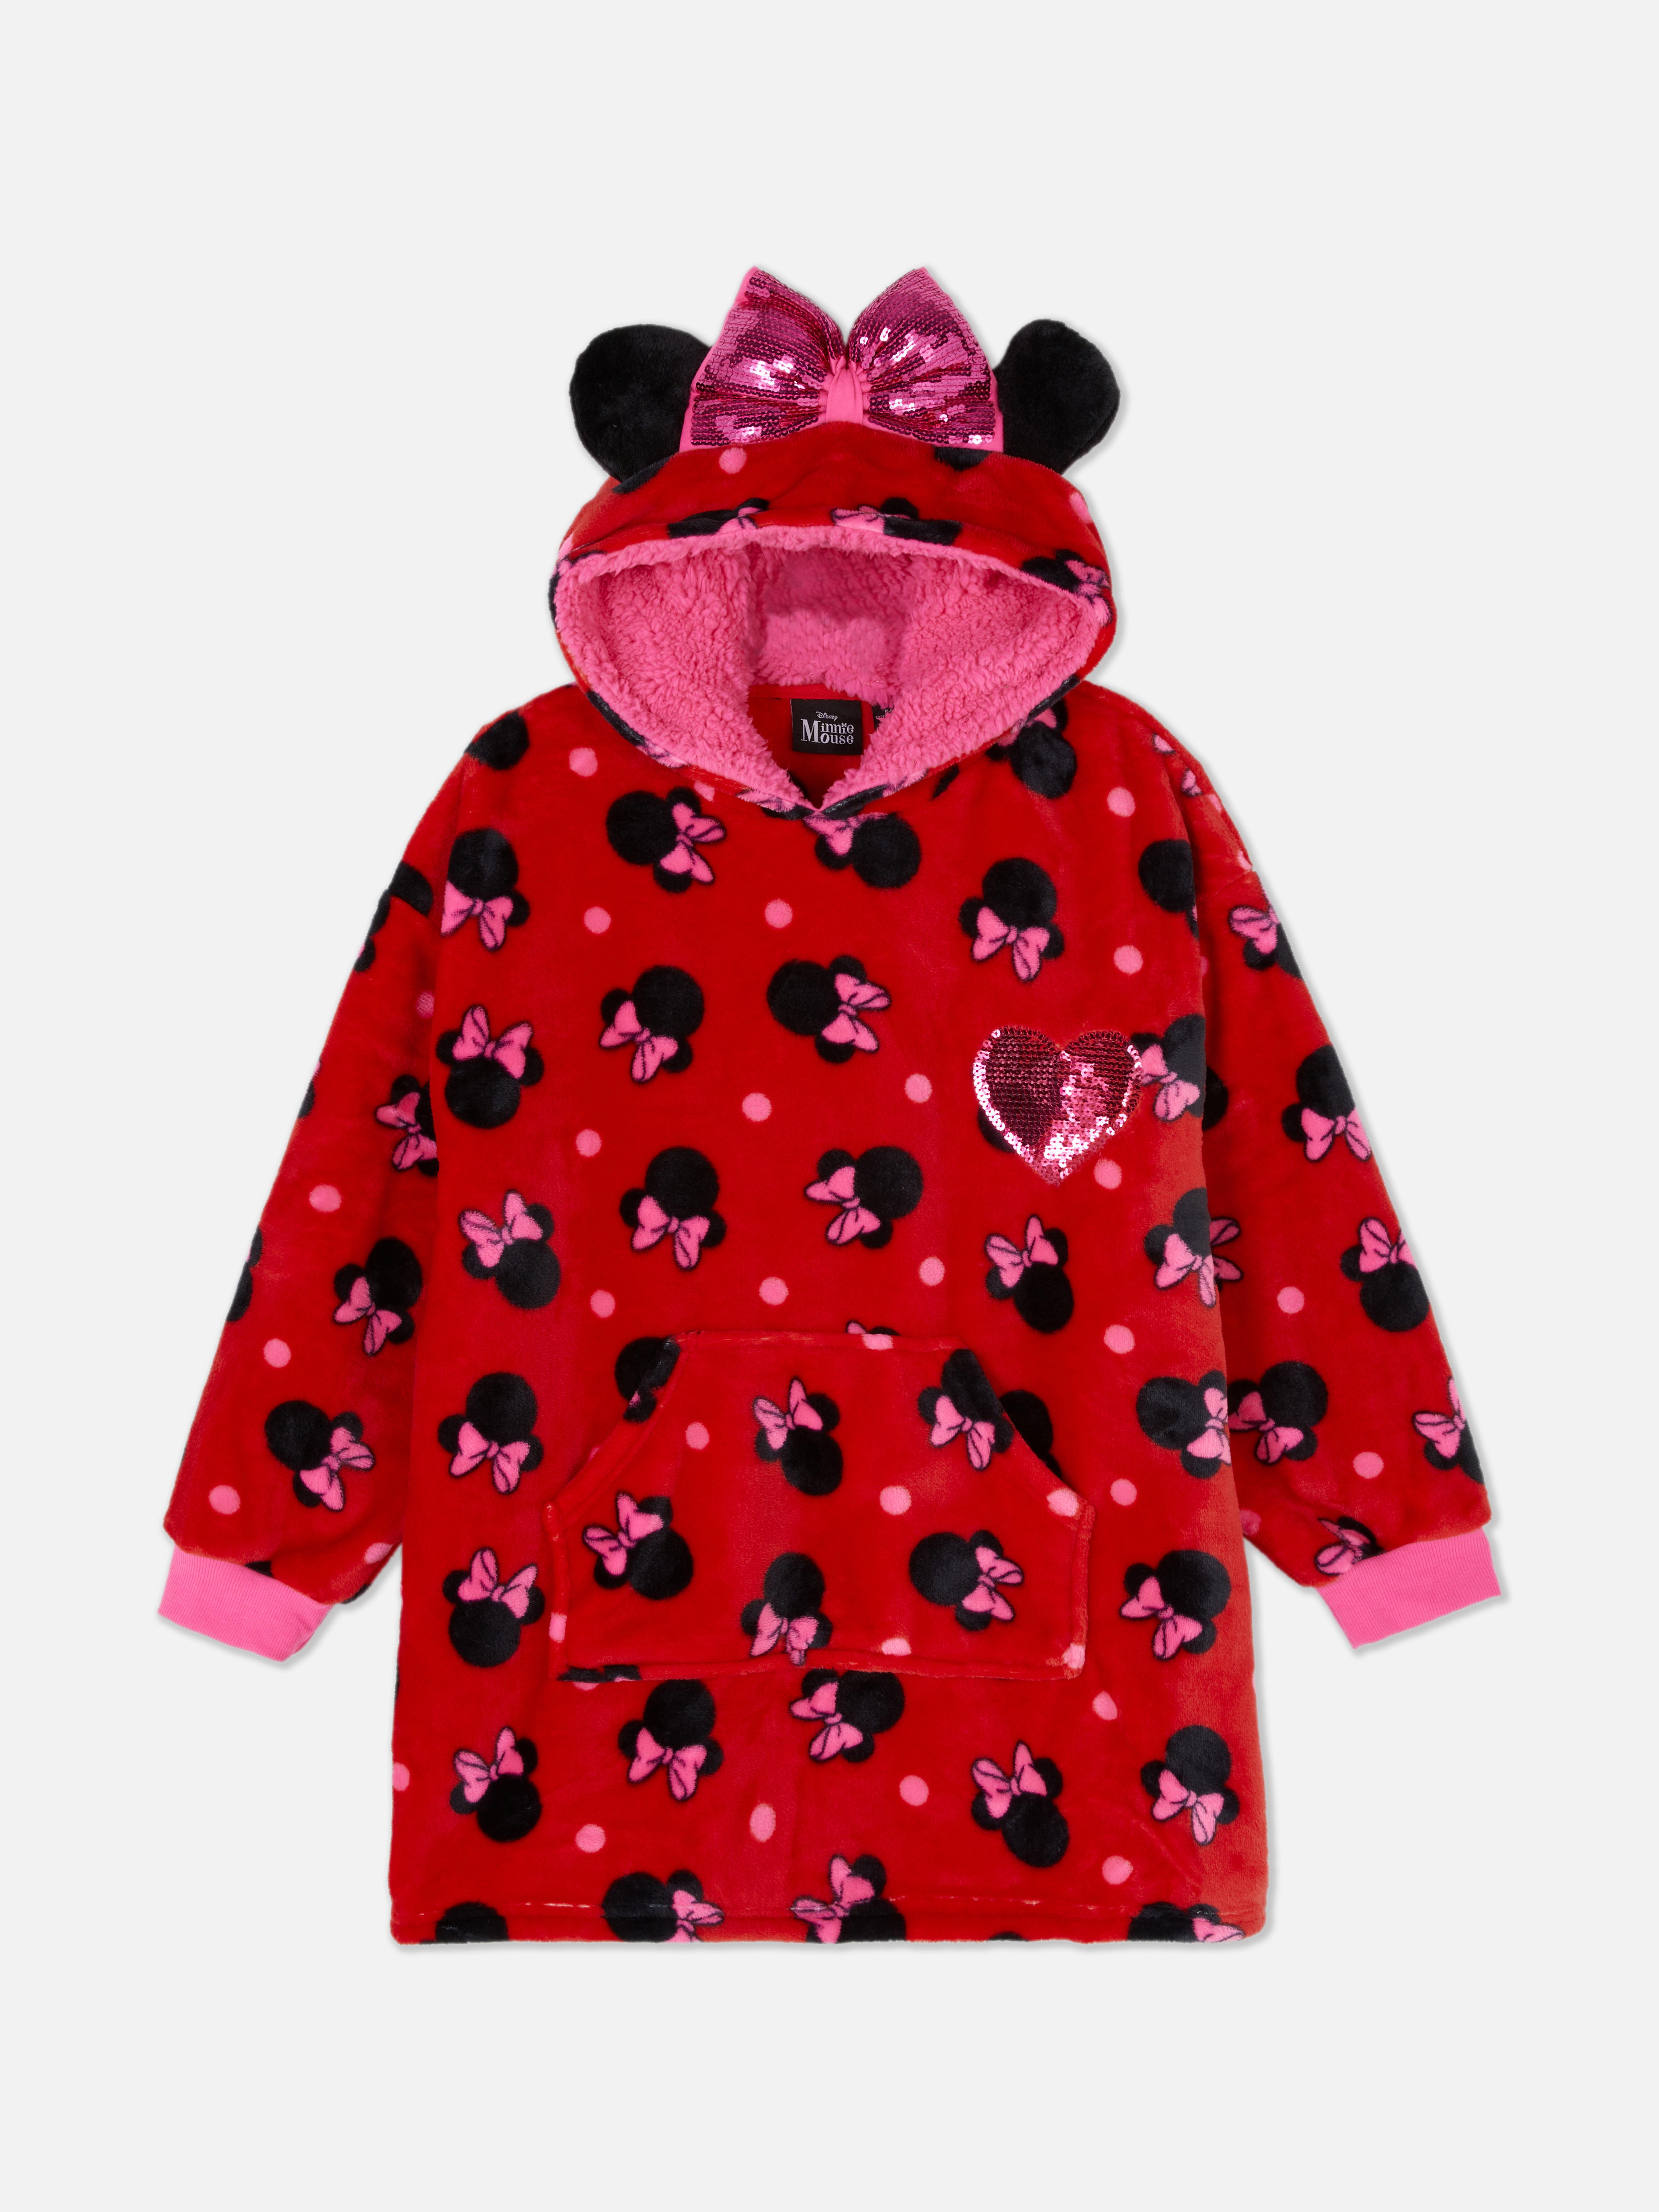 Sudadera de Minnie Mouse de Disney | Pijamas para niños Moda para niños | Ropa para niños | Todos los productos Primark | España